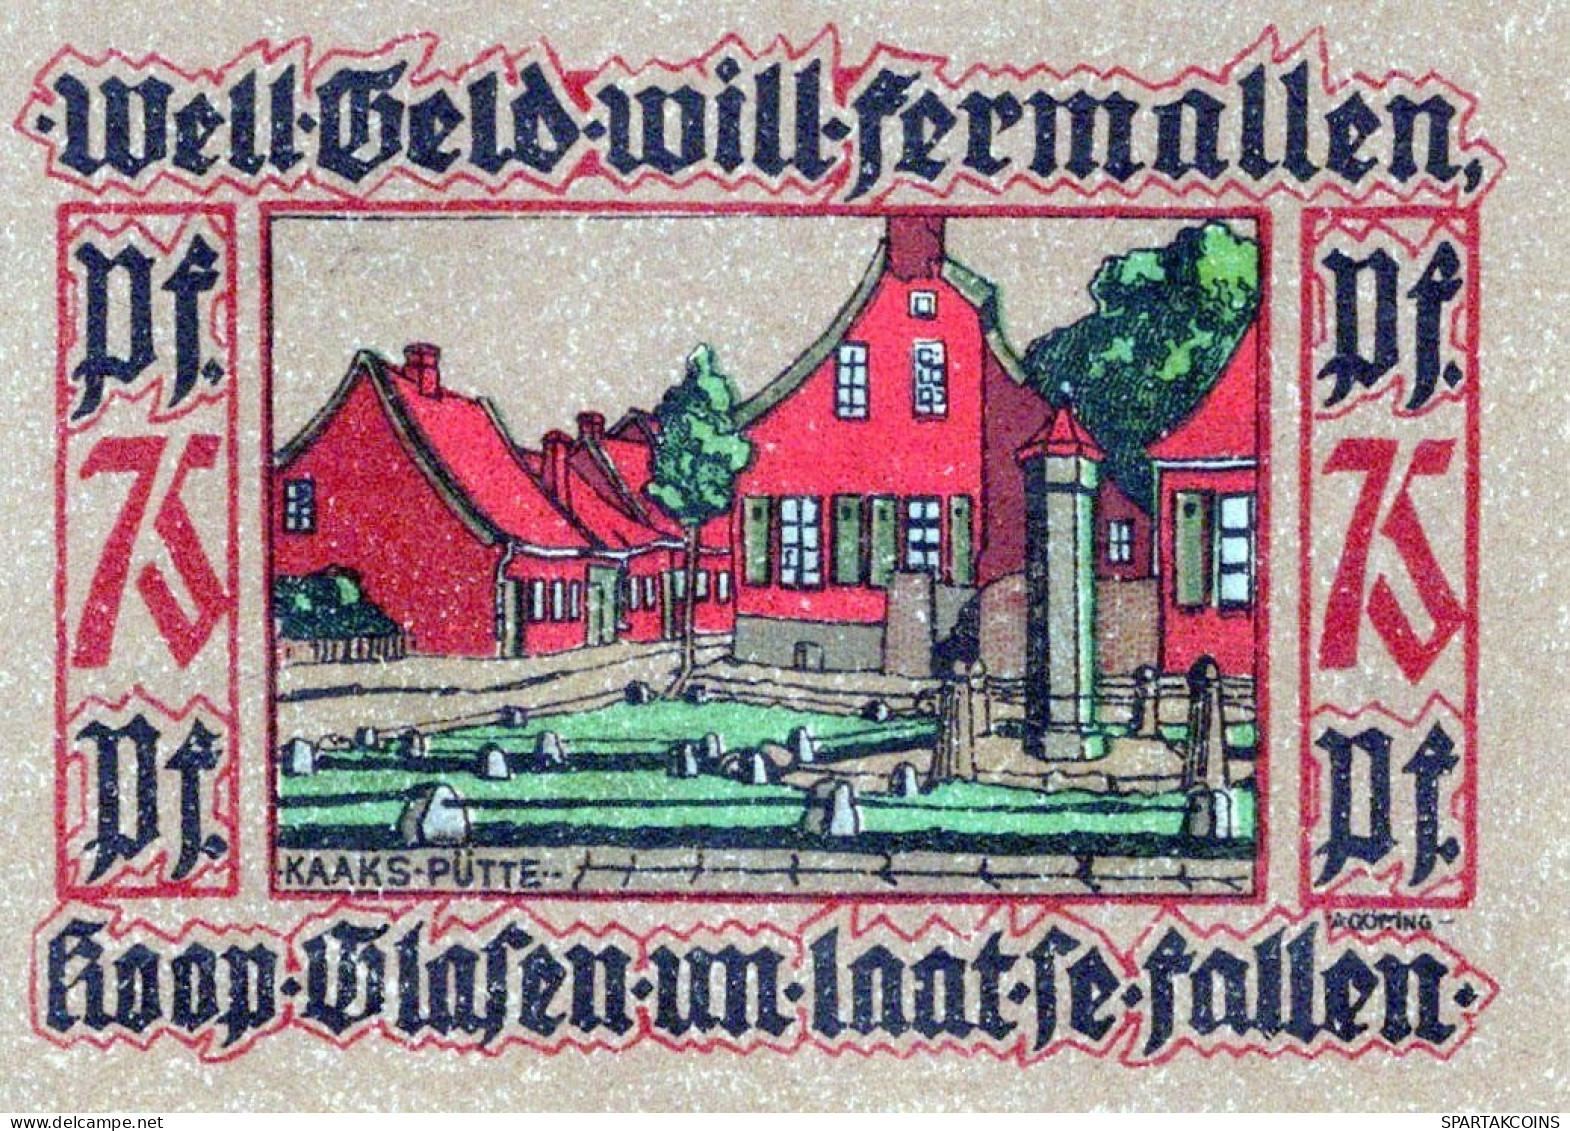 75 PFENNIG 1921 Stadt LEER Hanover UNC DEUTSCHLAND Notgeld Banknote #PC074 - [11] Local Banknote Issues